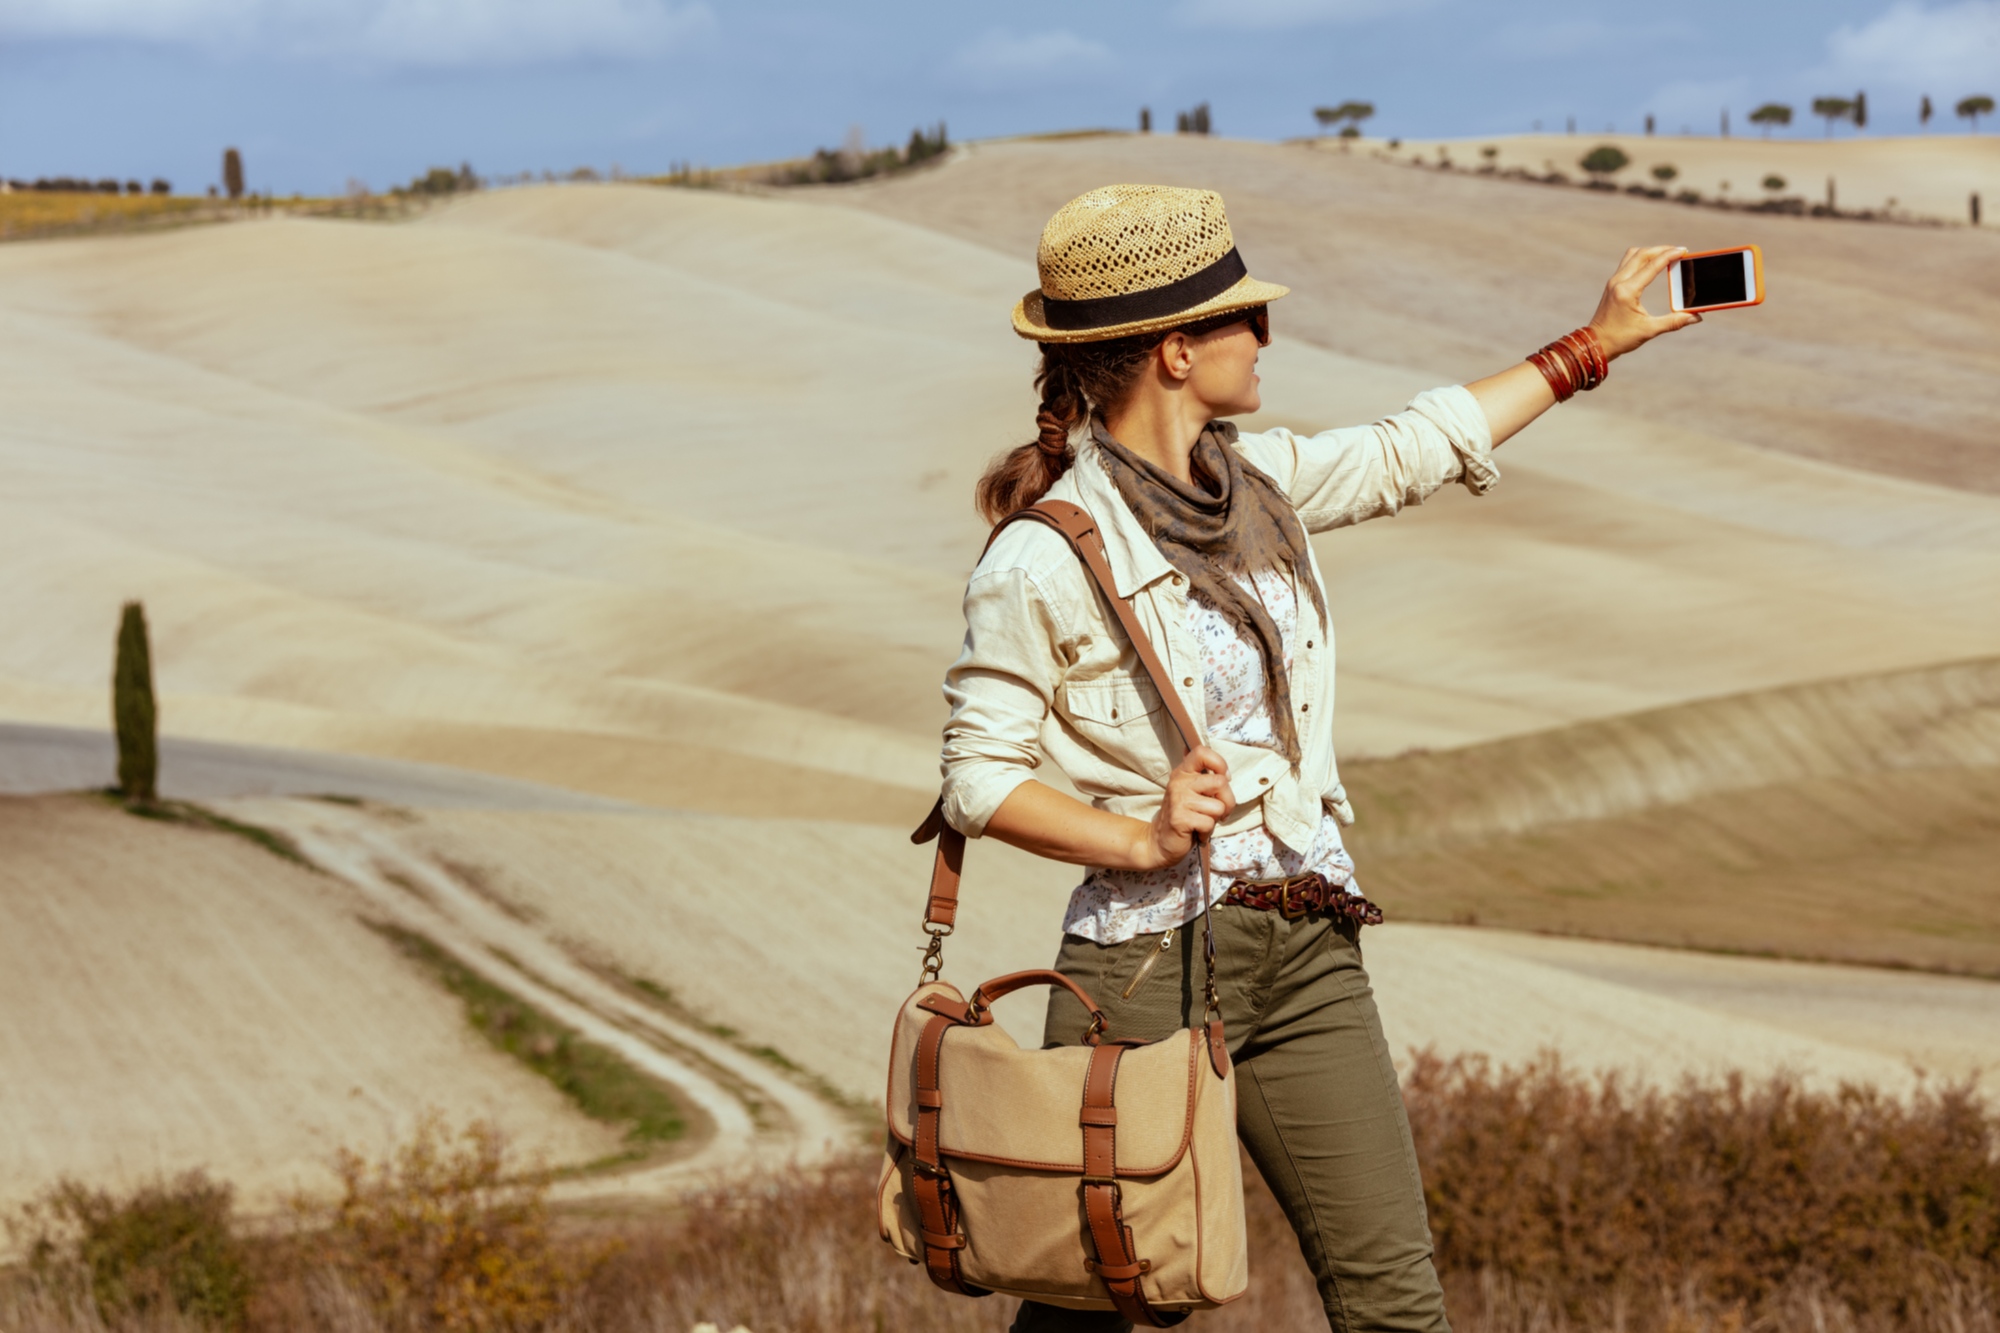 Das Landschaftspanorama der Toskana ist ideal, um großartige Fotos aufzunehmen